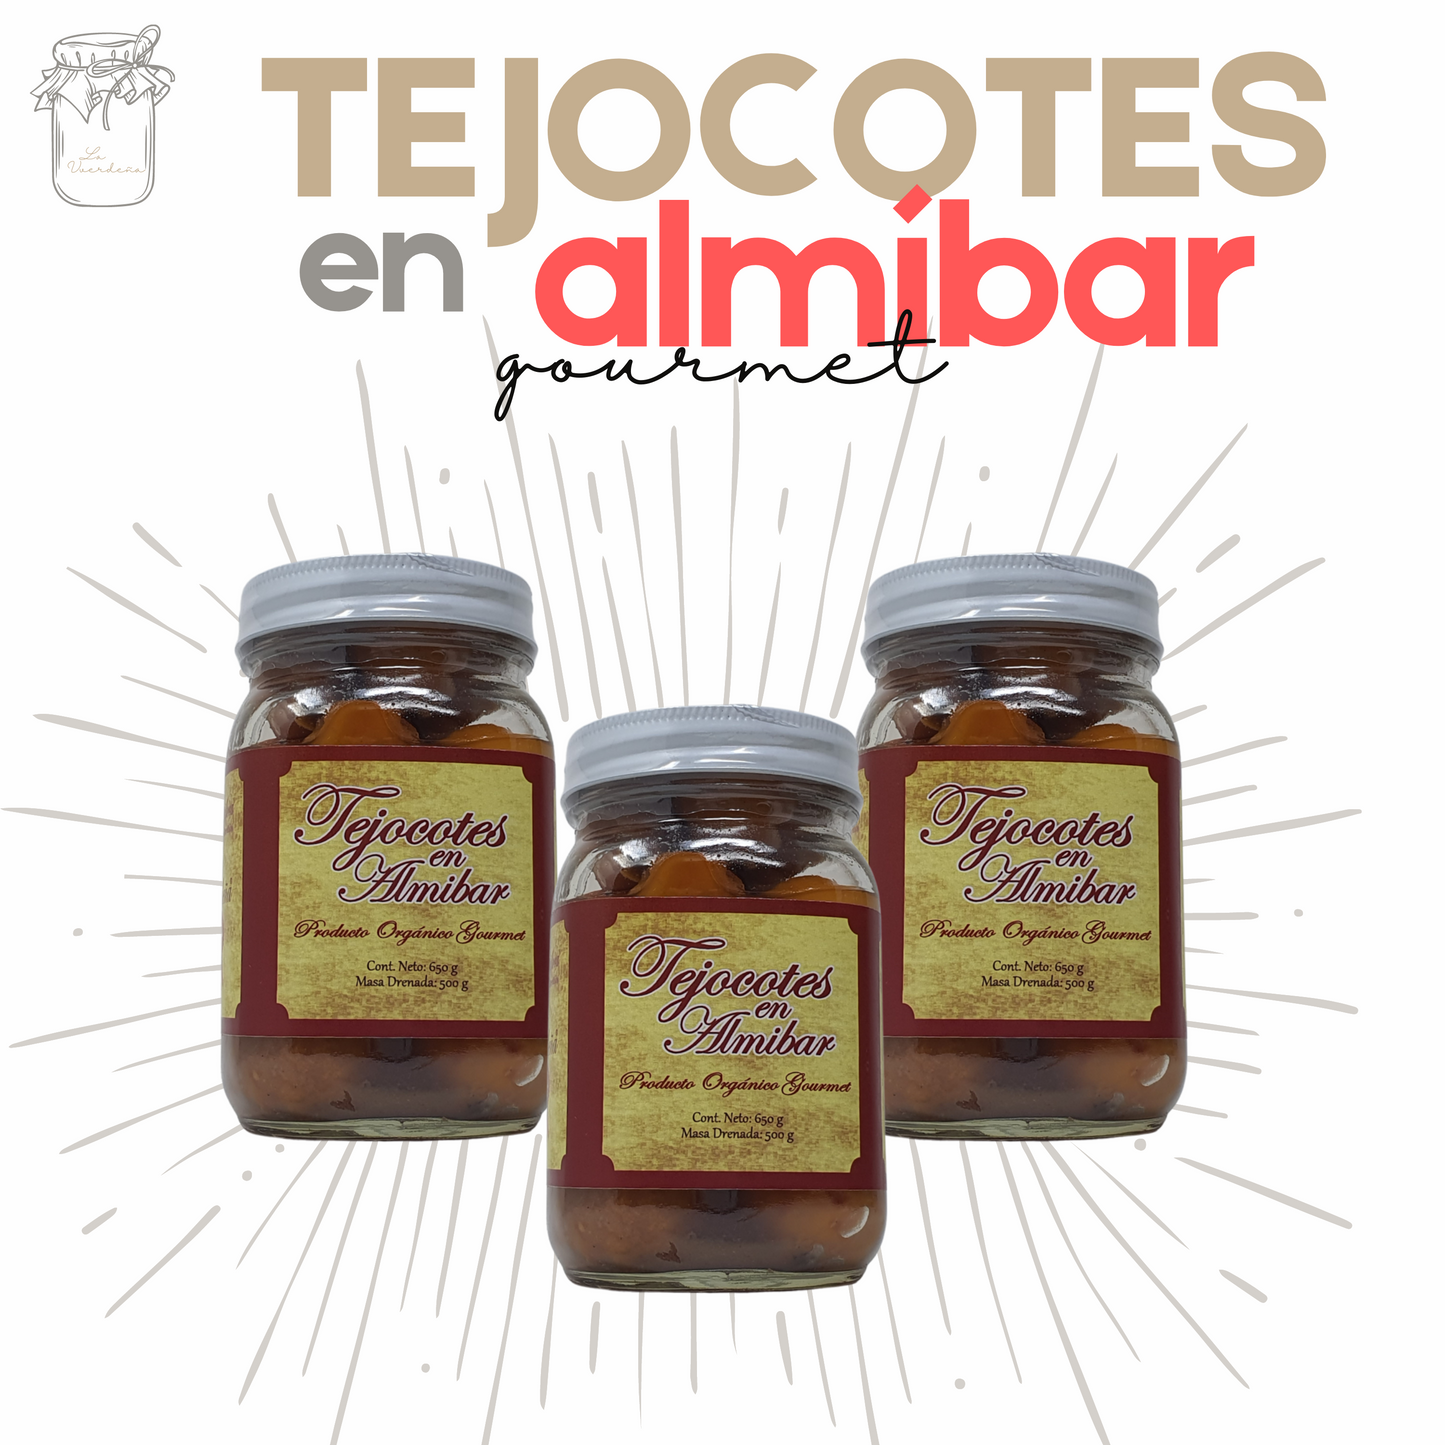 Tejocotes en almíbar | Almíbar | Gourmet | Artesanal | 1.5 kg | Mexpofood